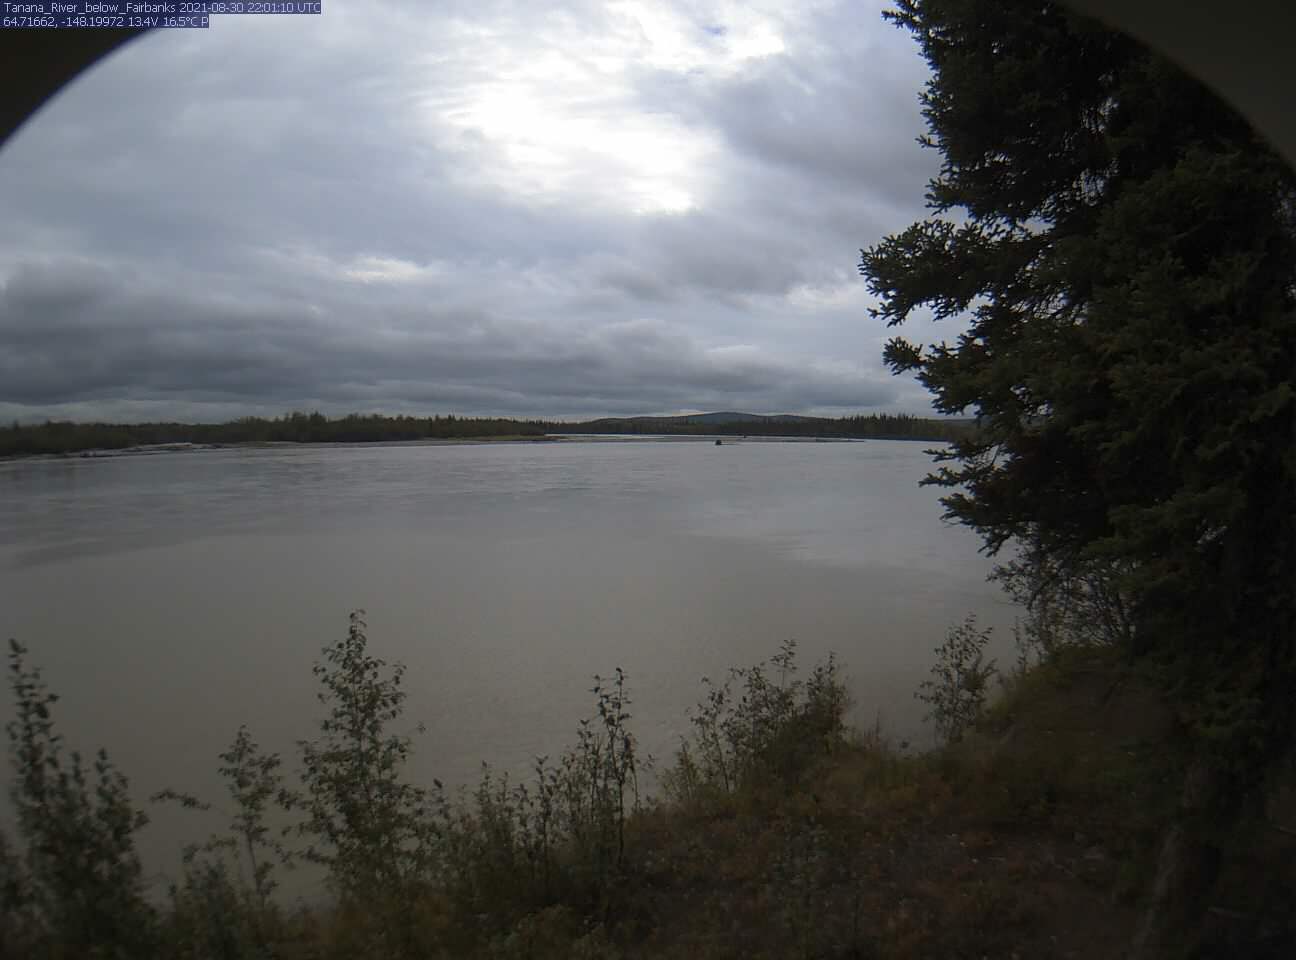 Tanana_River_below_Fairbanks_20210830220111.jpg